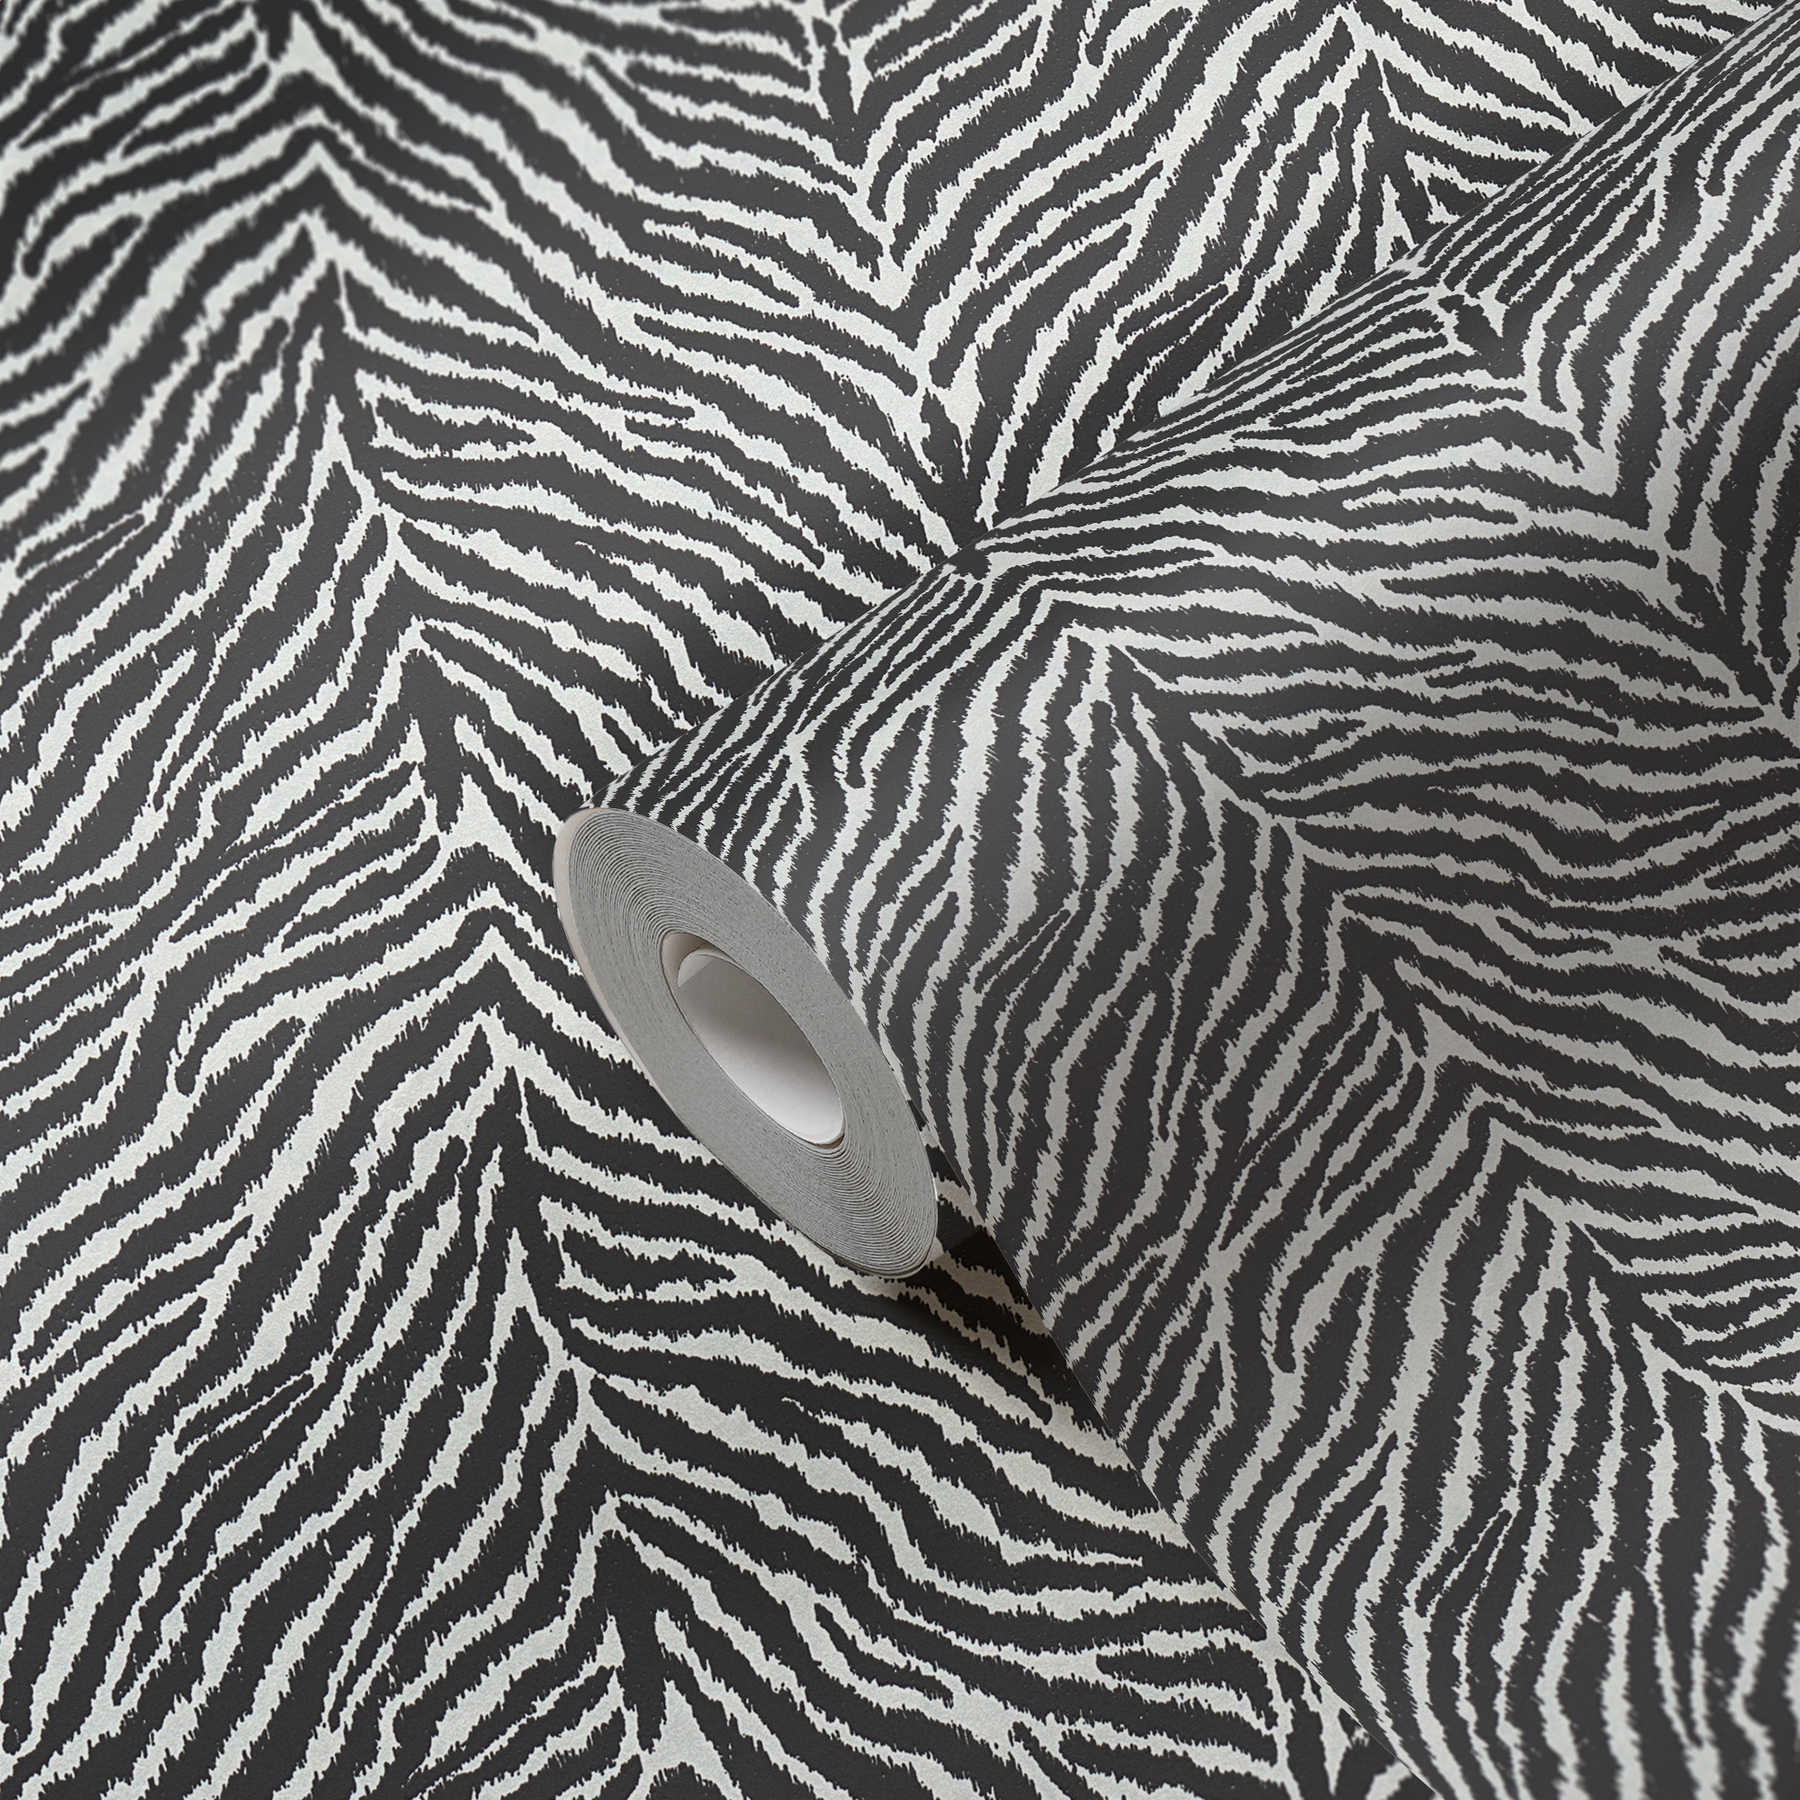             Papel pintado no tejido con estampado de cebra - negro, blanco
        